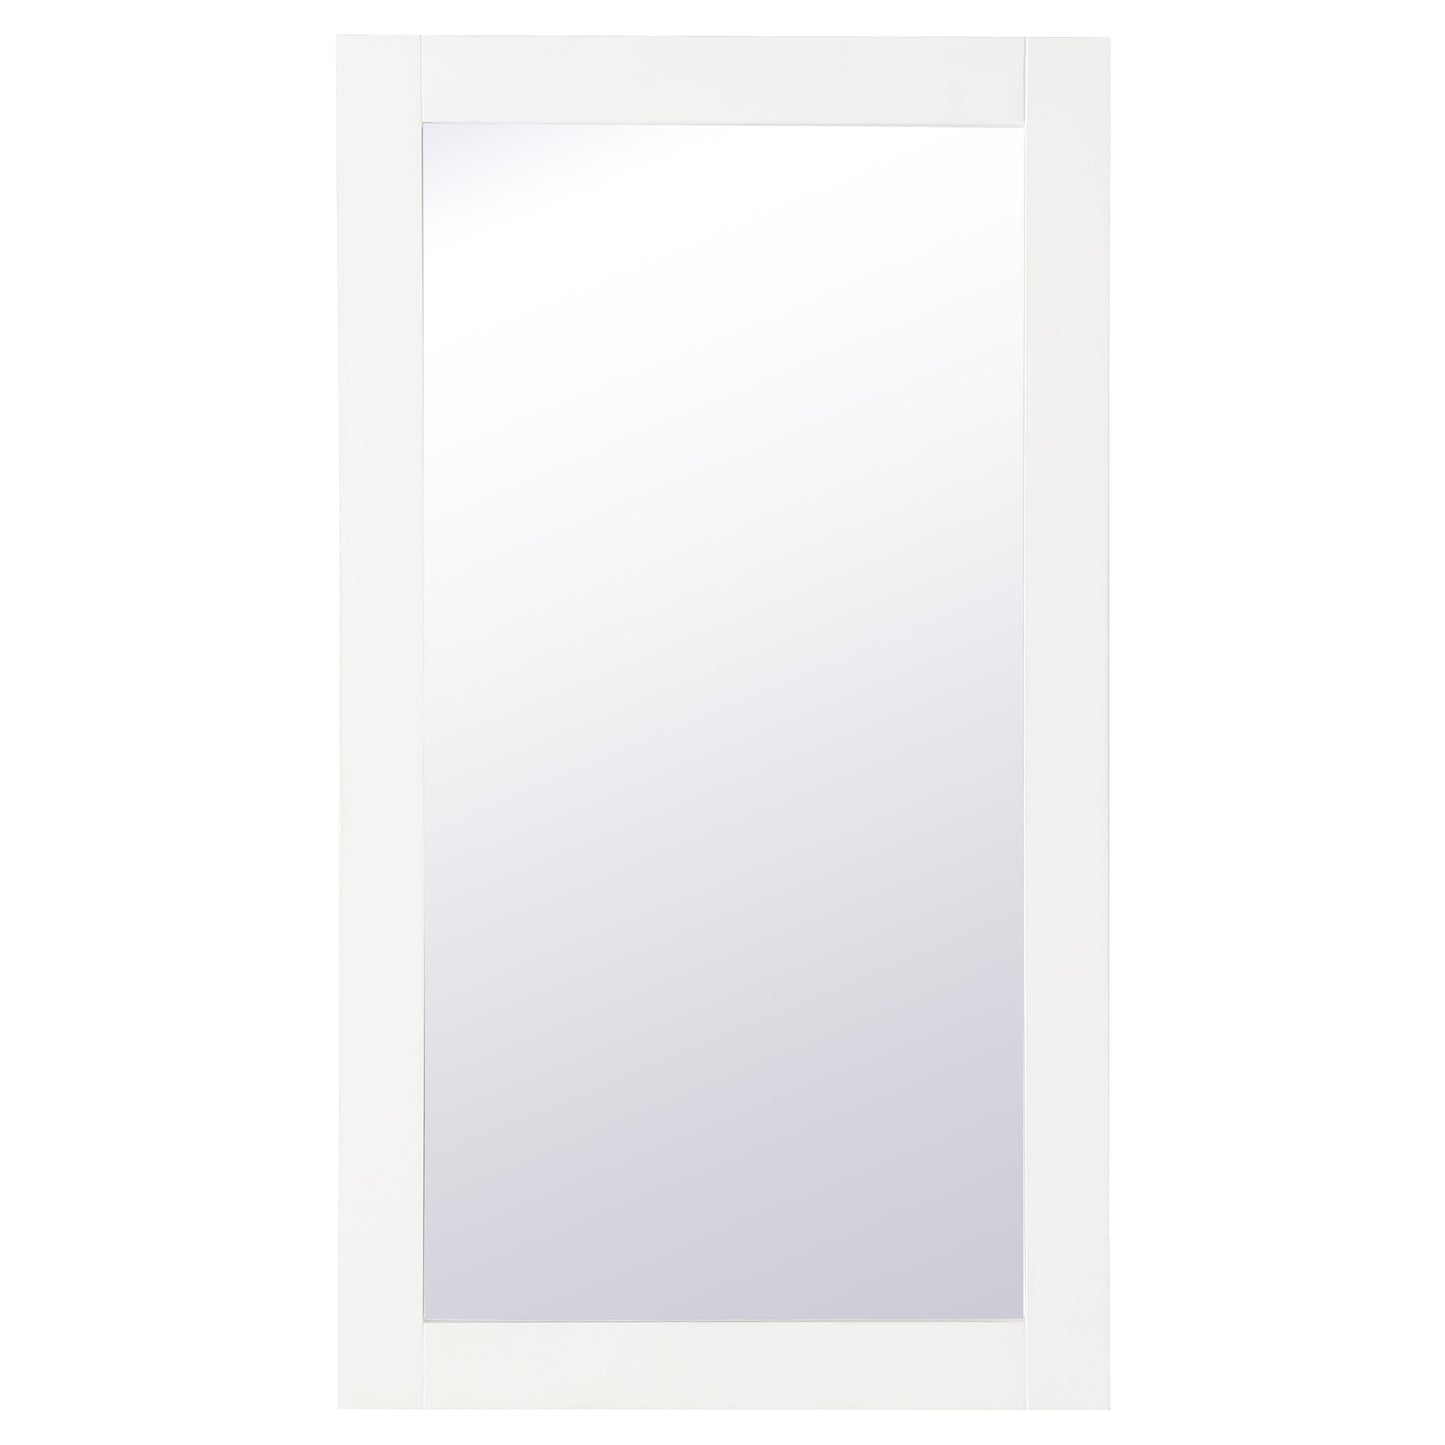 VM21832WH Aqua 18" x 32" Framed Rectangular Mirror in White